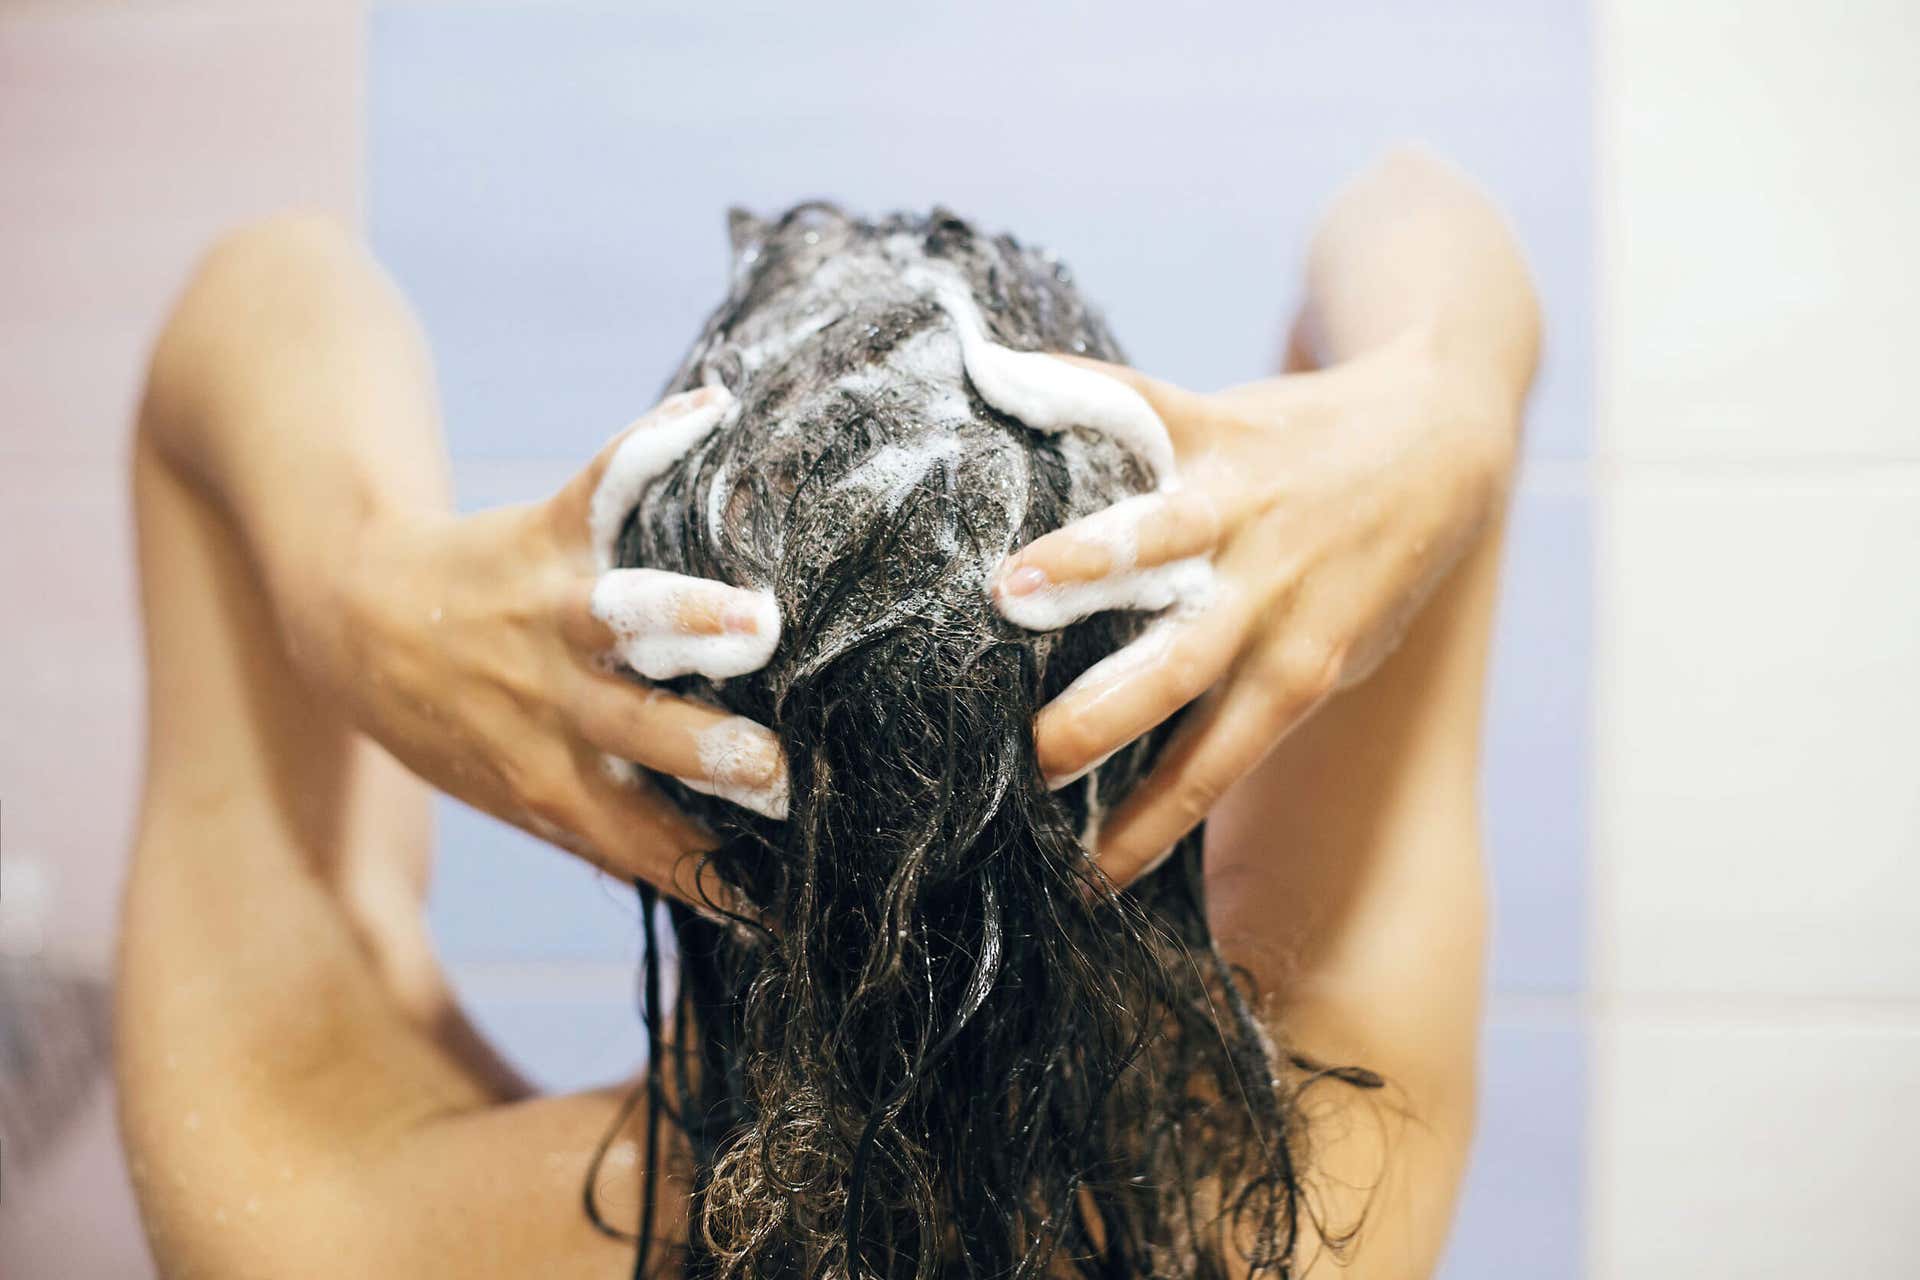 Kobieta myje włosy